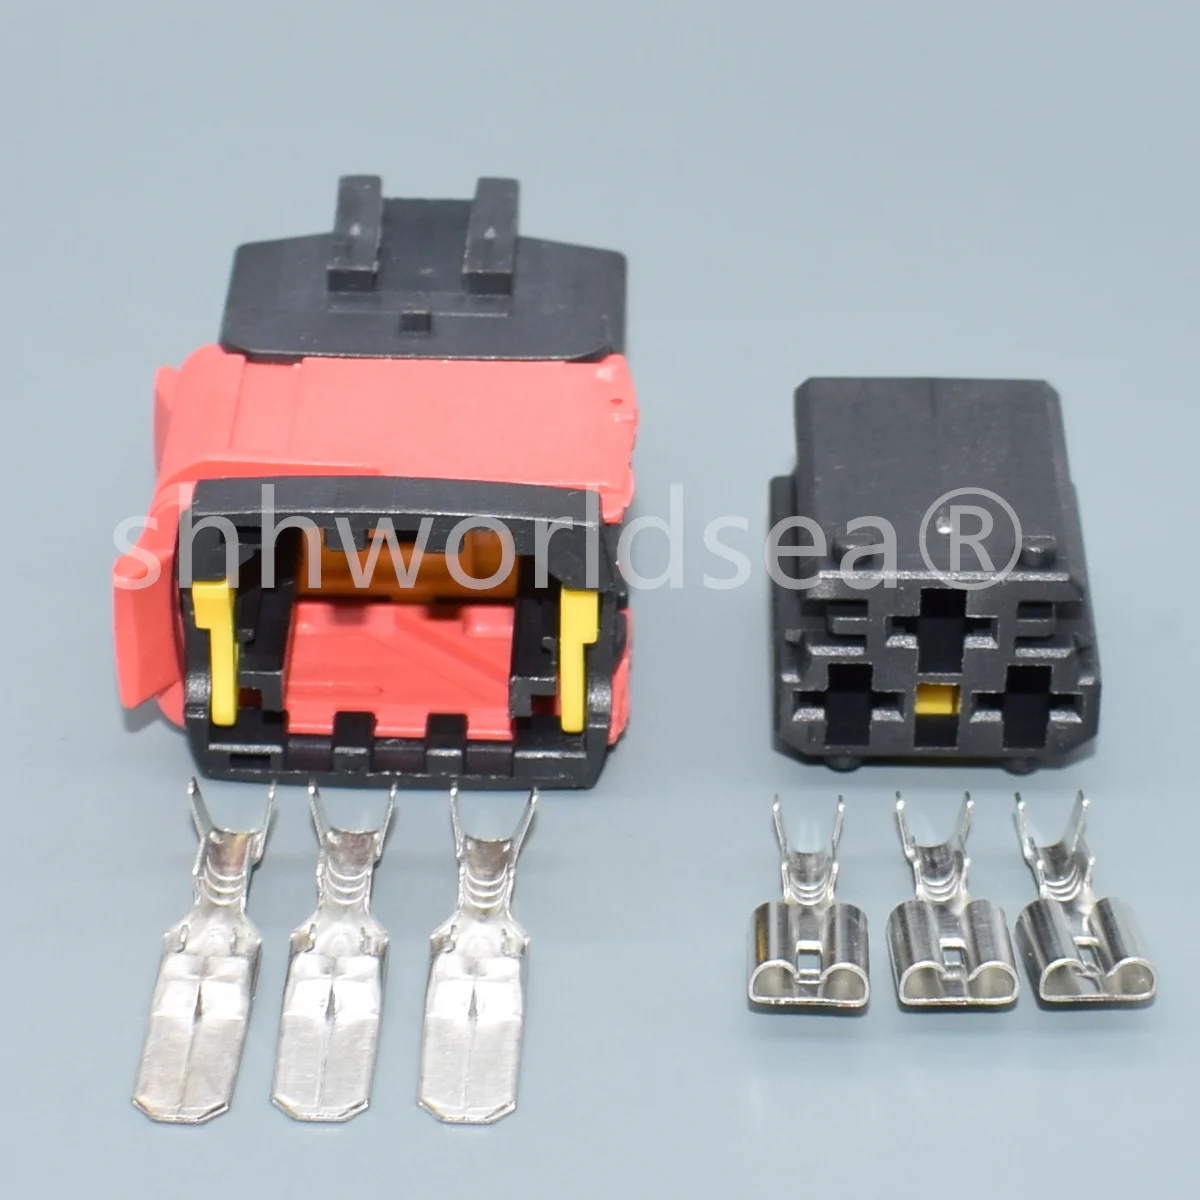 shhworldsea 3 Pin mees naine 1544226-1 15442265-2 6.3 mm Auto Wire Plug Connector Suure voolu Juhtmestik Pesa1